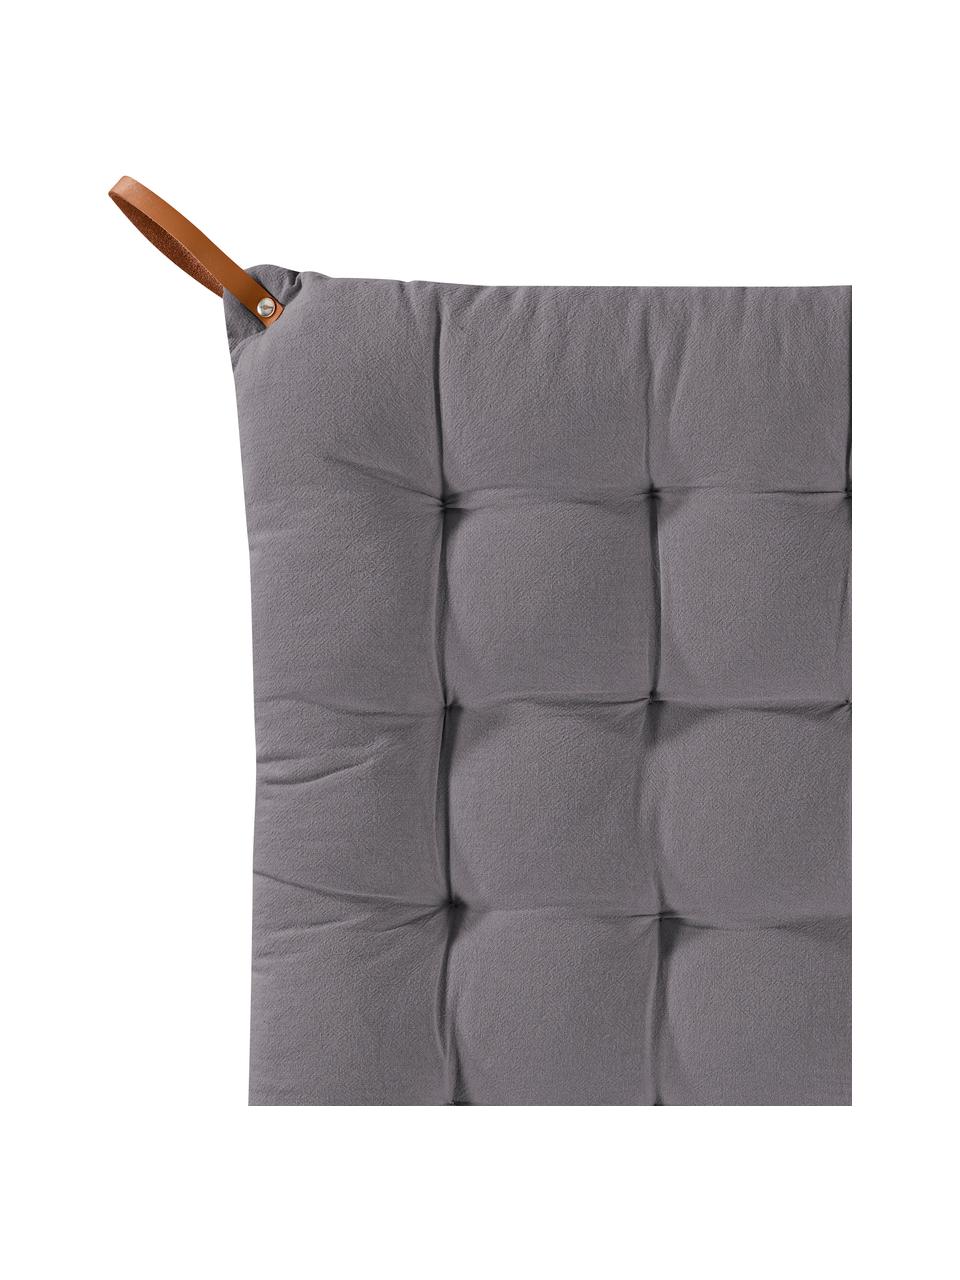 Poduszka na siedzisko Billie, 100% bawełna, Antracytowy, S 40 x D 40 cm